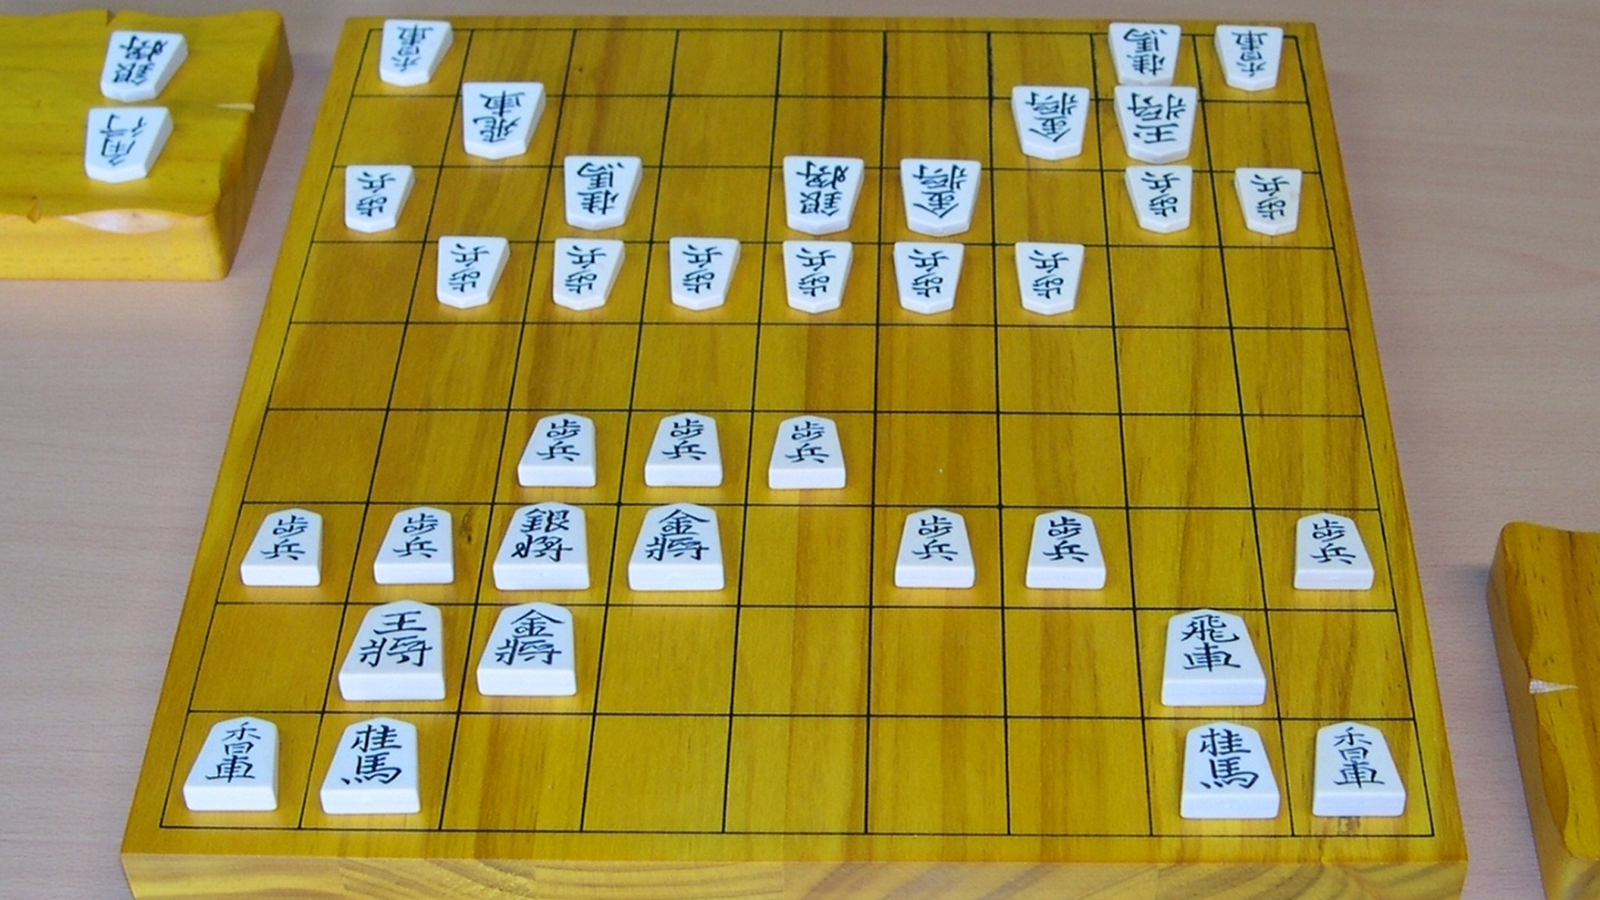 How to Play Shogi